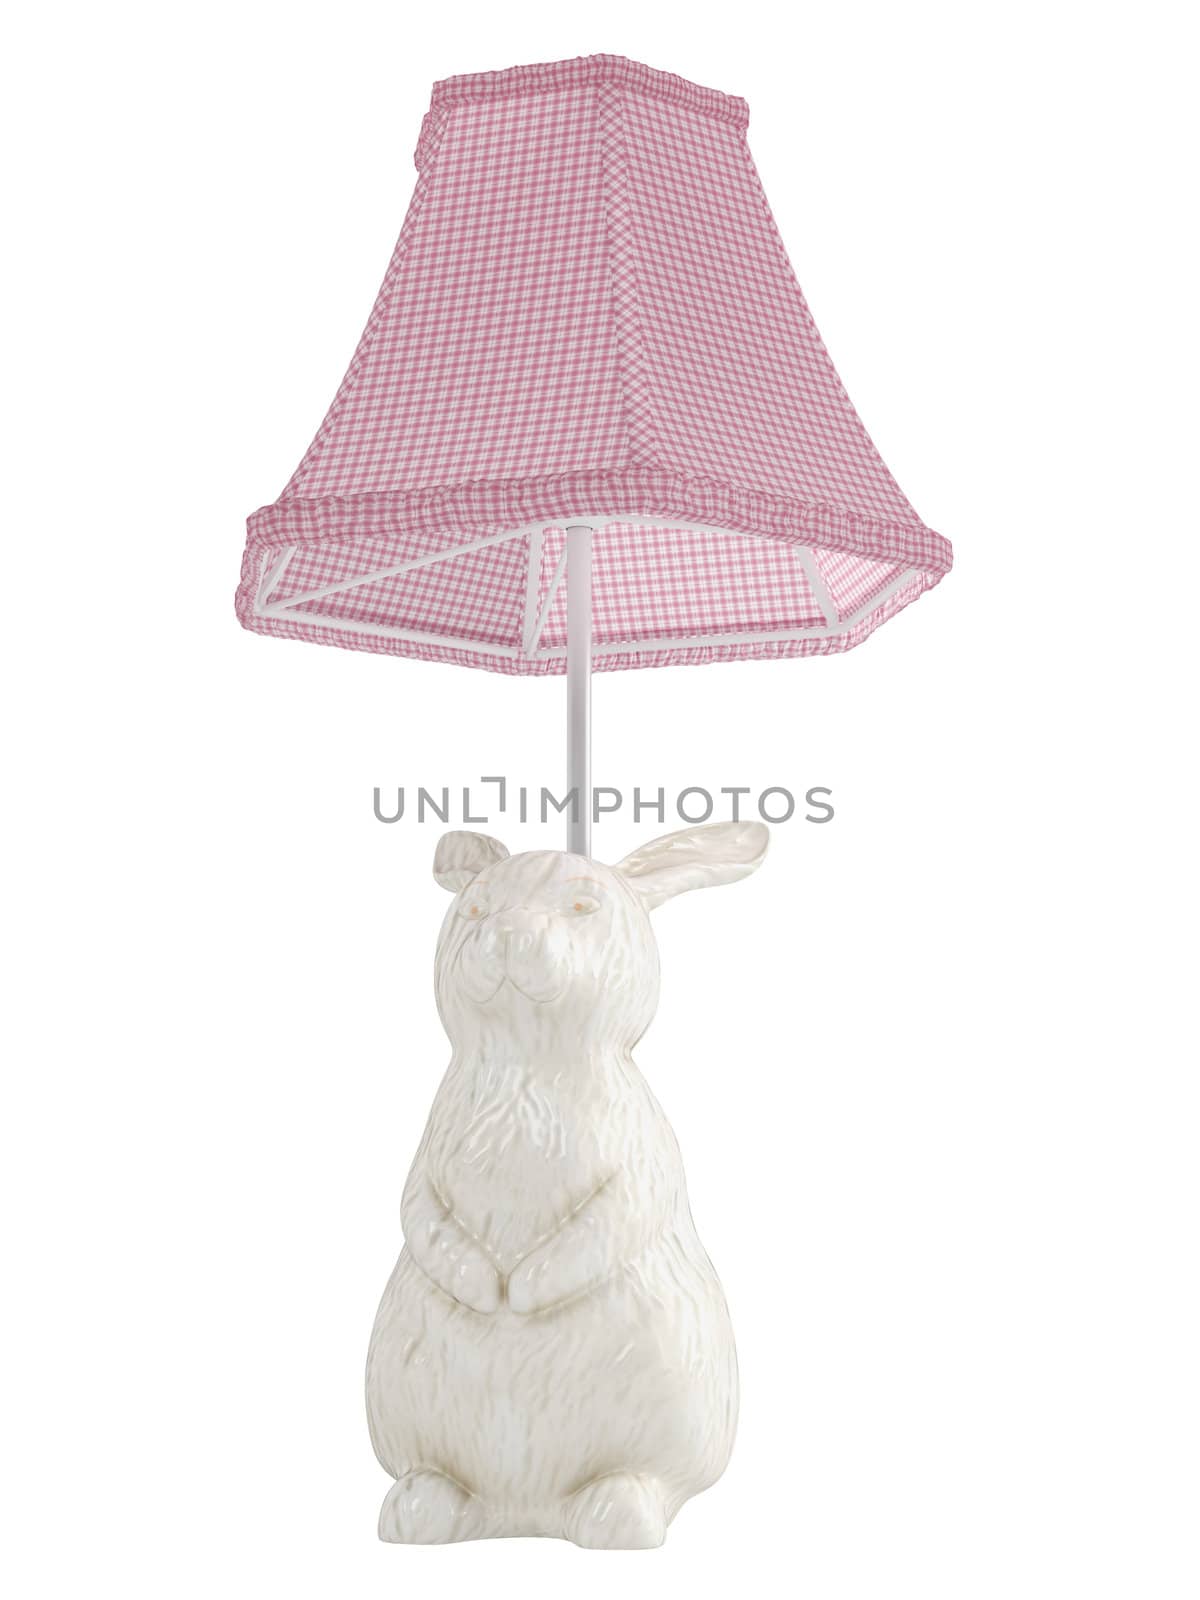 Bunny rabbit lamp by AlexanderMorozov